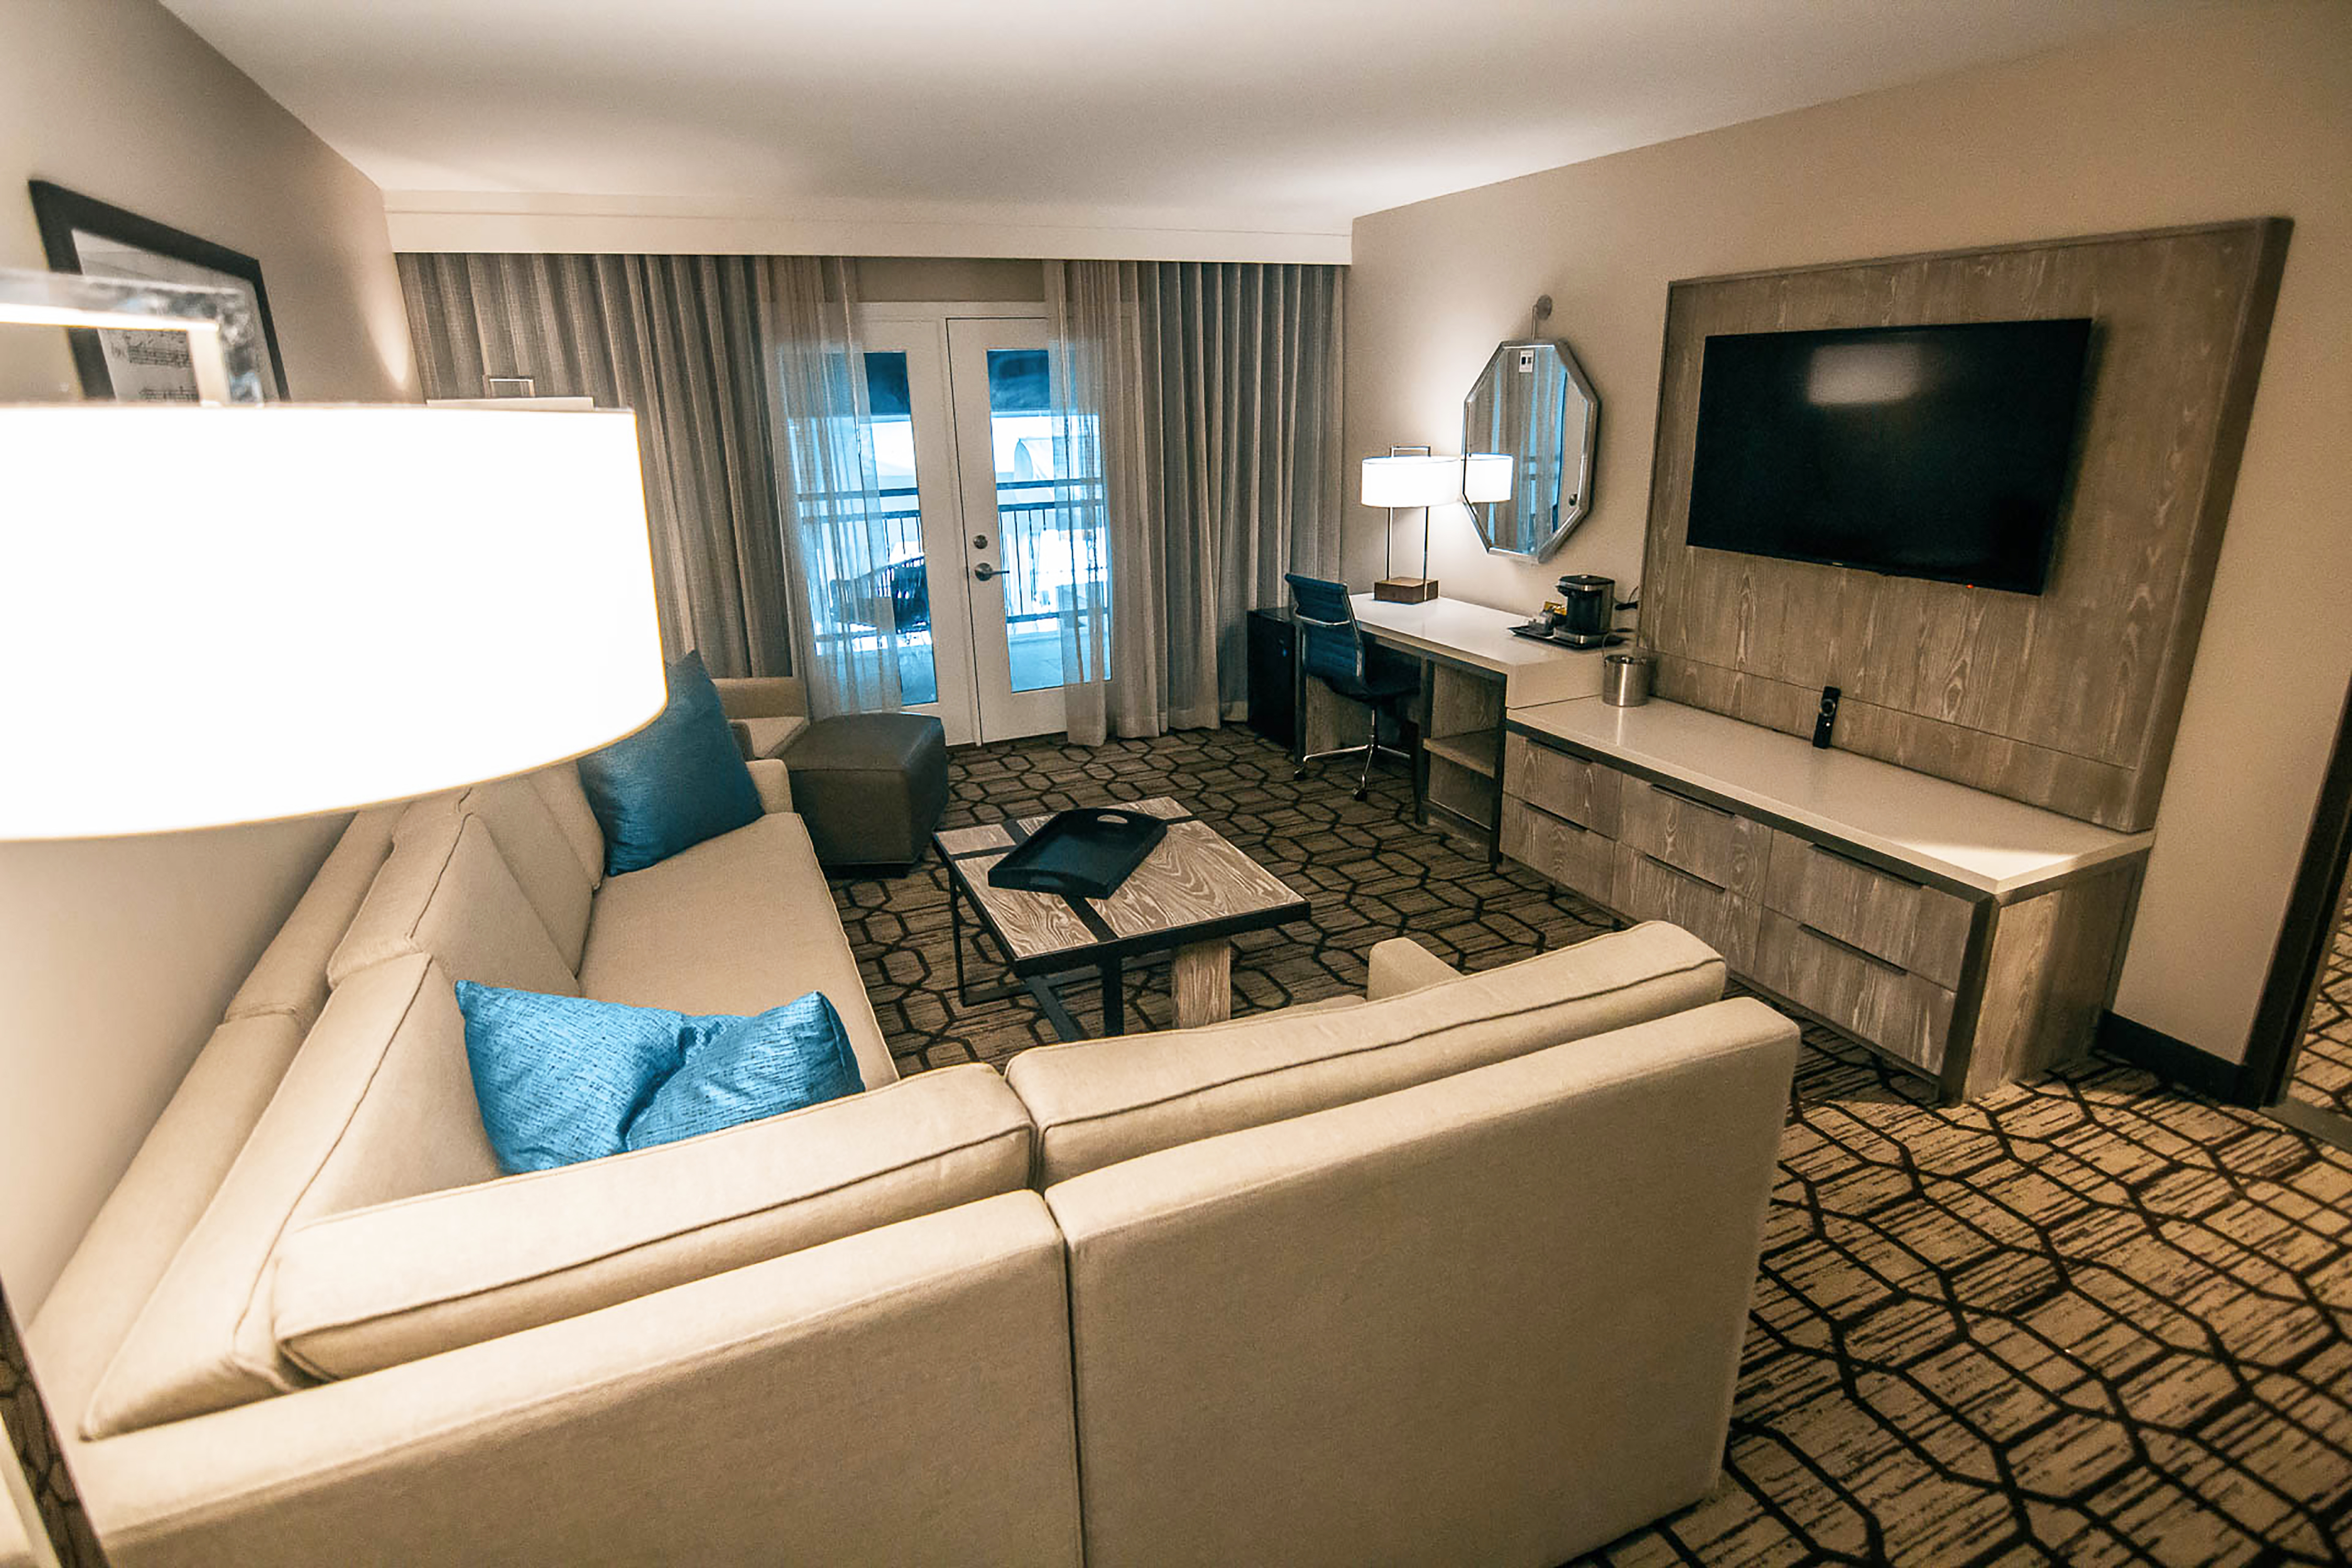 guest suite lounge area, tv